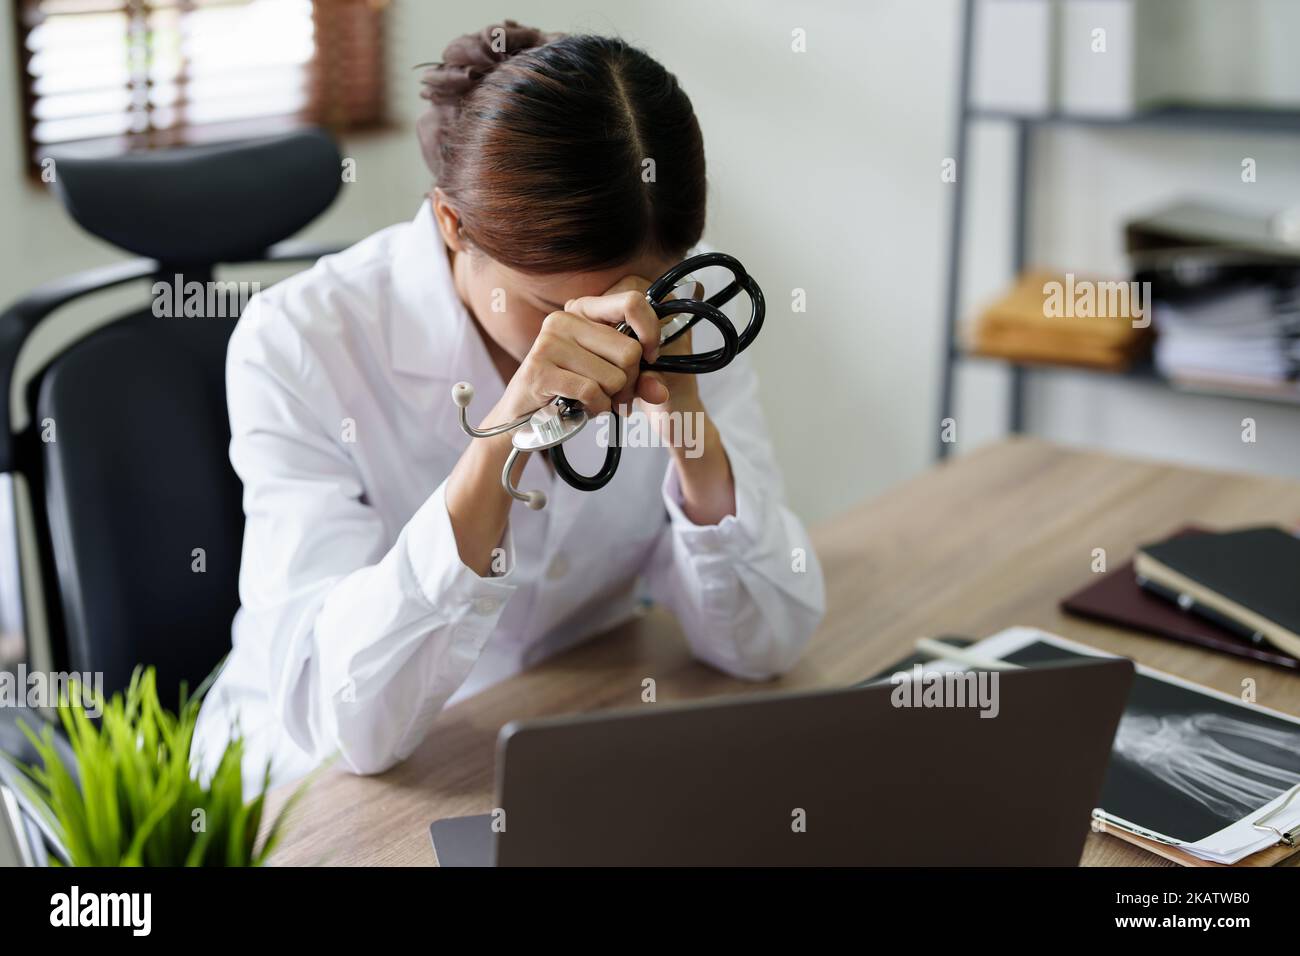 Une femme asiatique médecin utilise un ordinateur tout en montrant des inquiétudes au sujet des informations sur le patient Banque D'Images